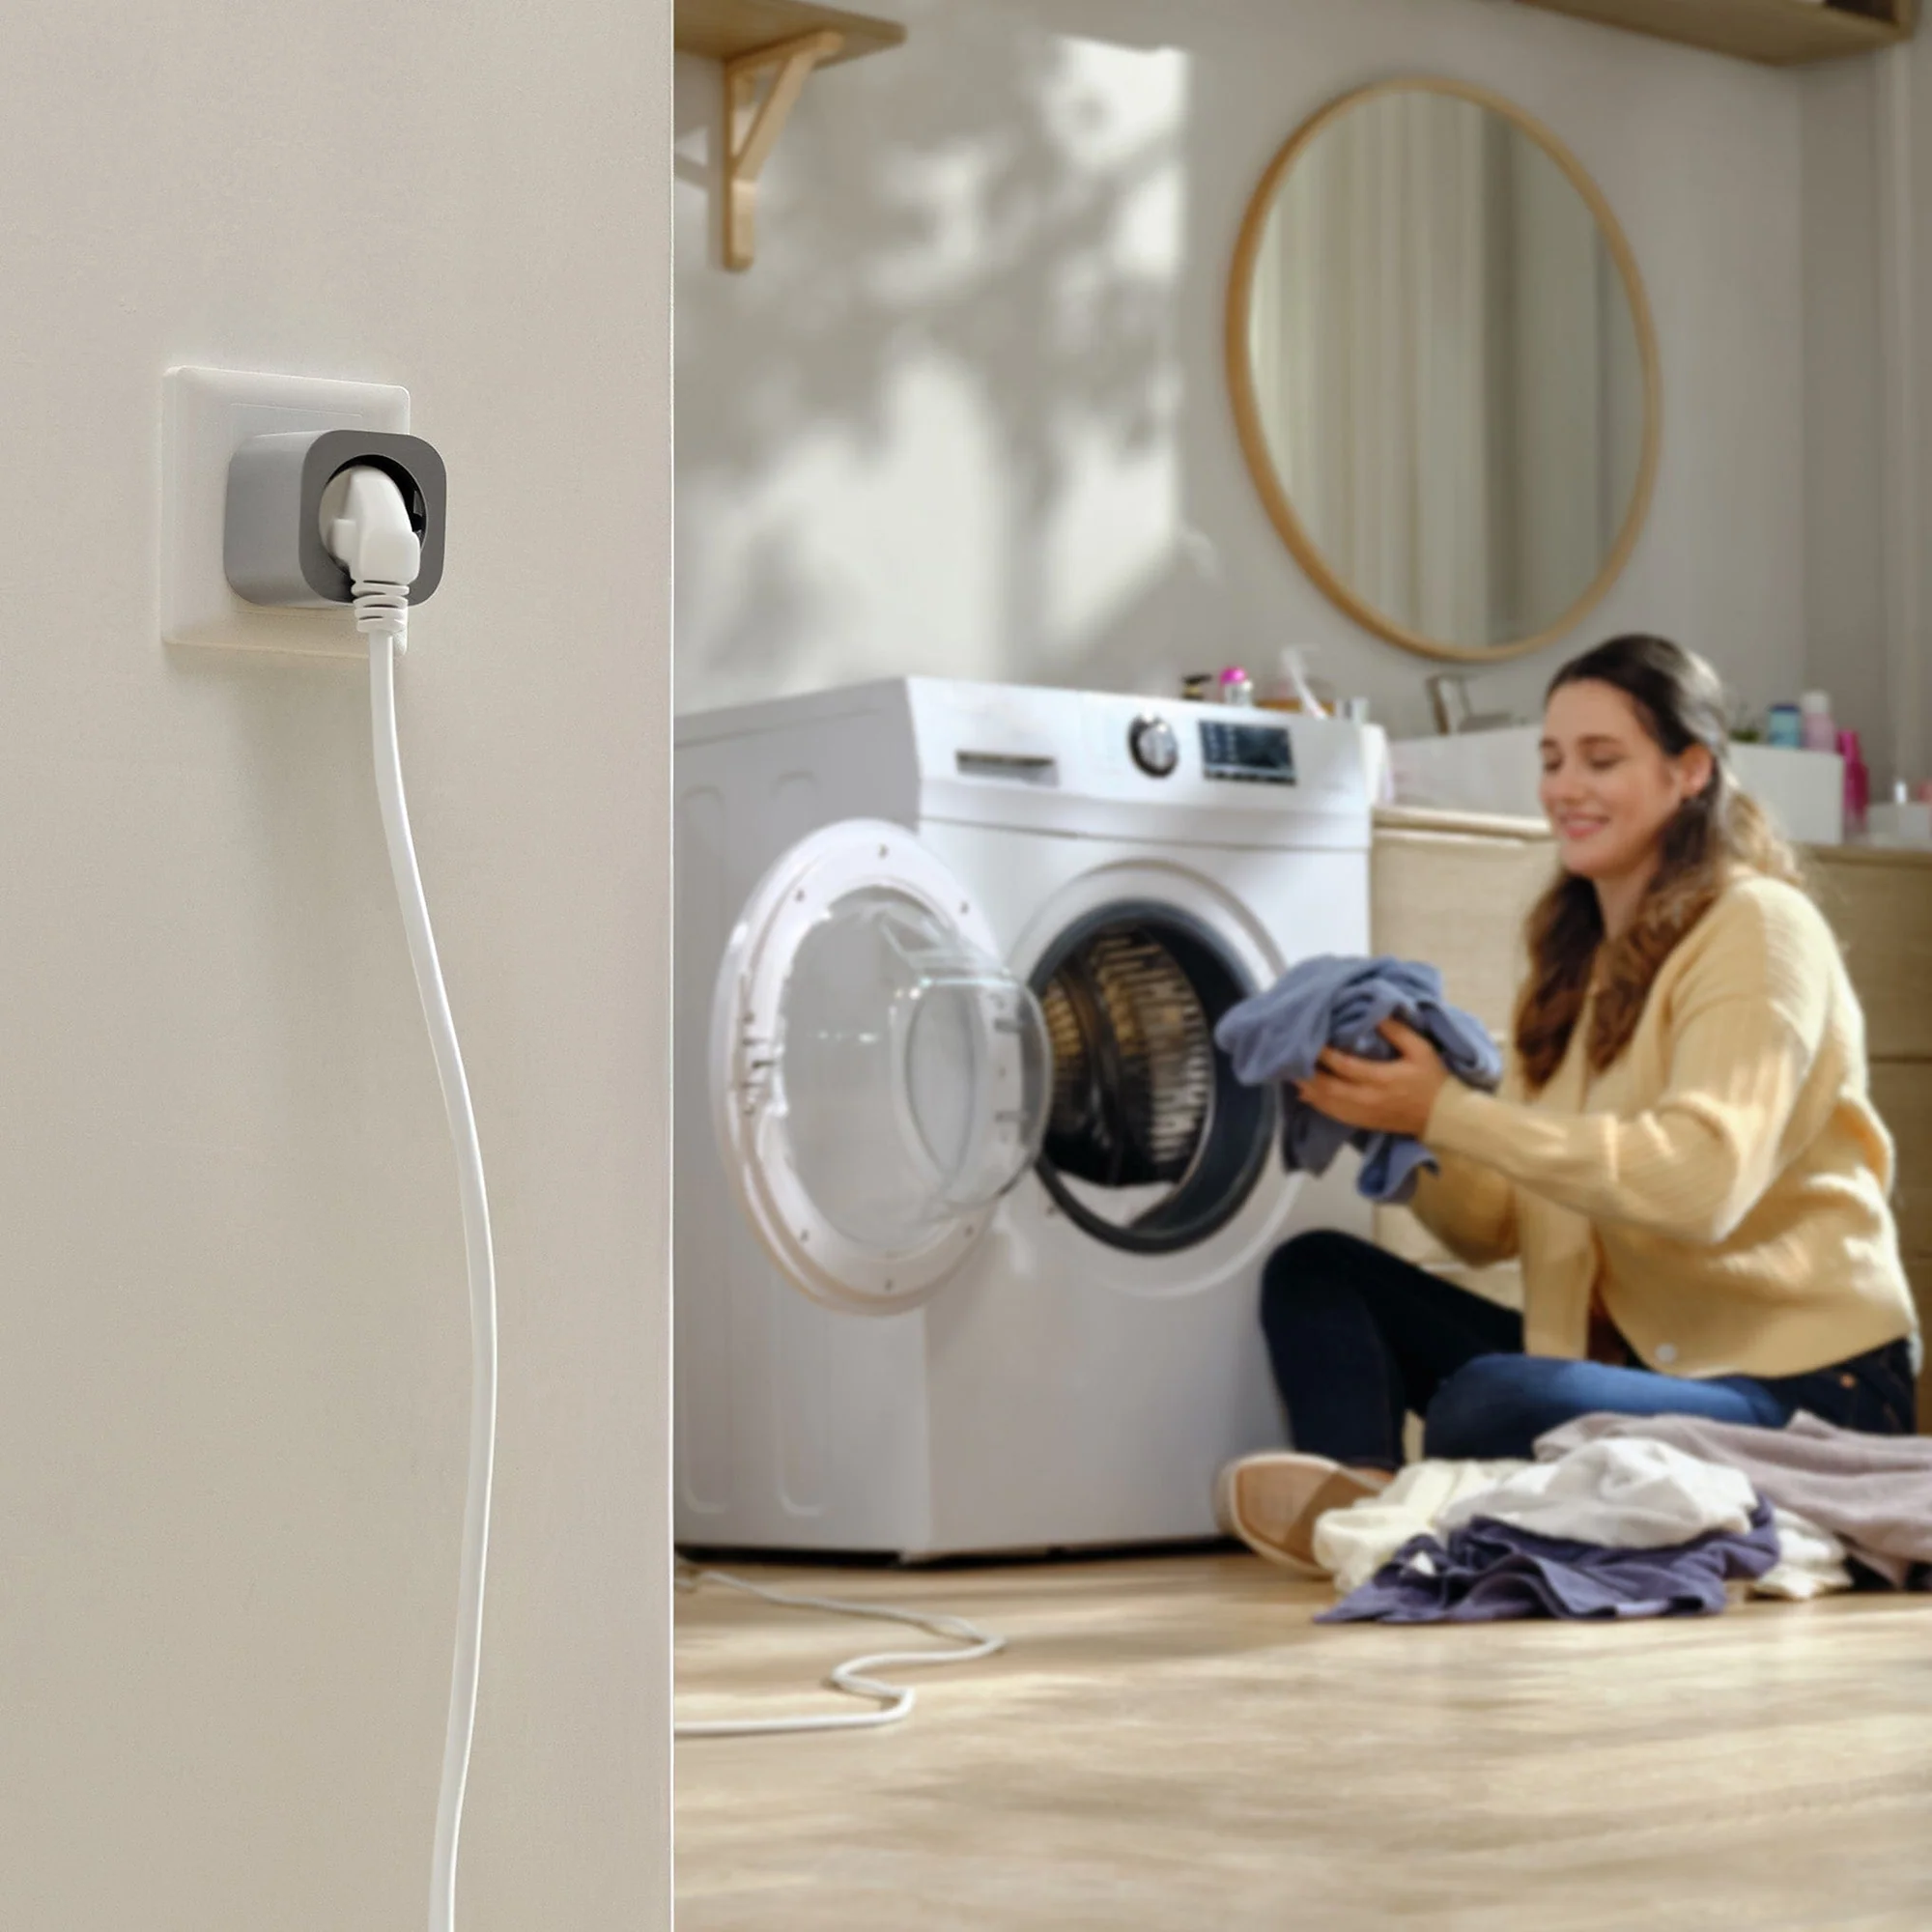 Prise intelligente (SmartPlug) EcoFlow connectée à une machine à laver